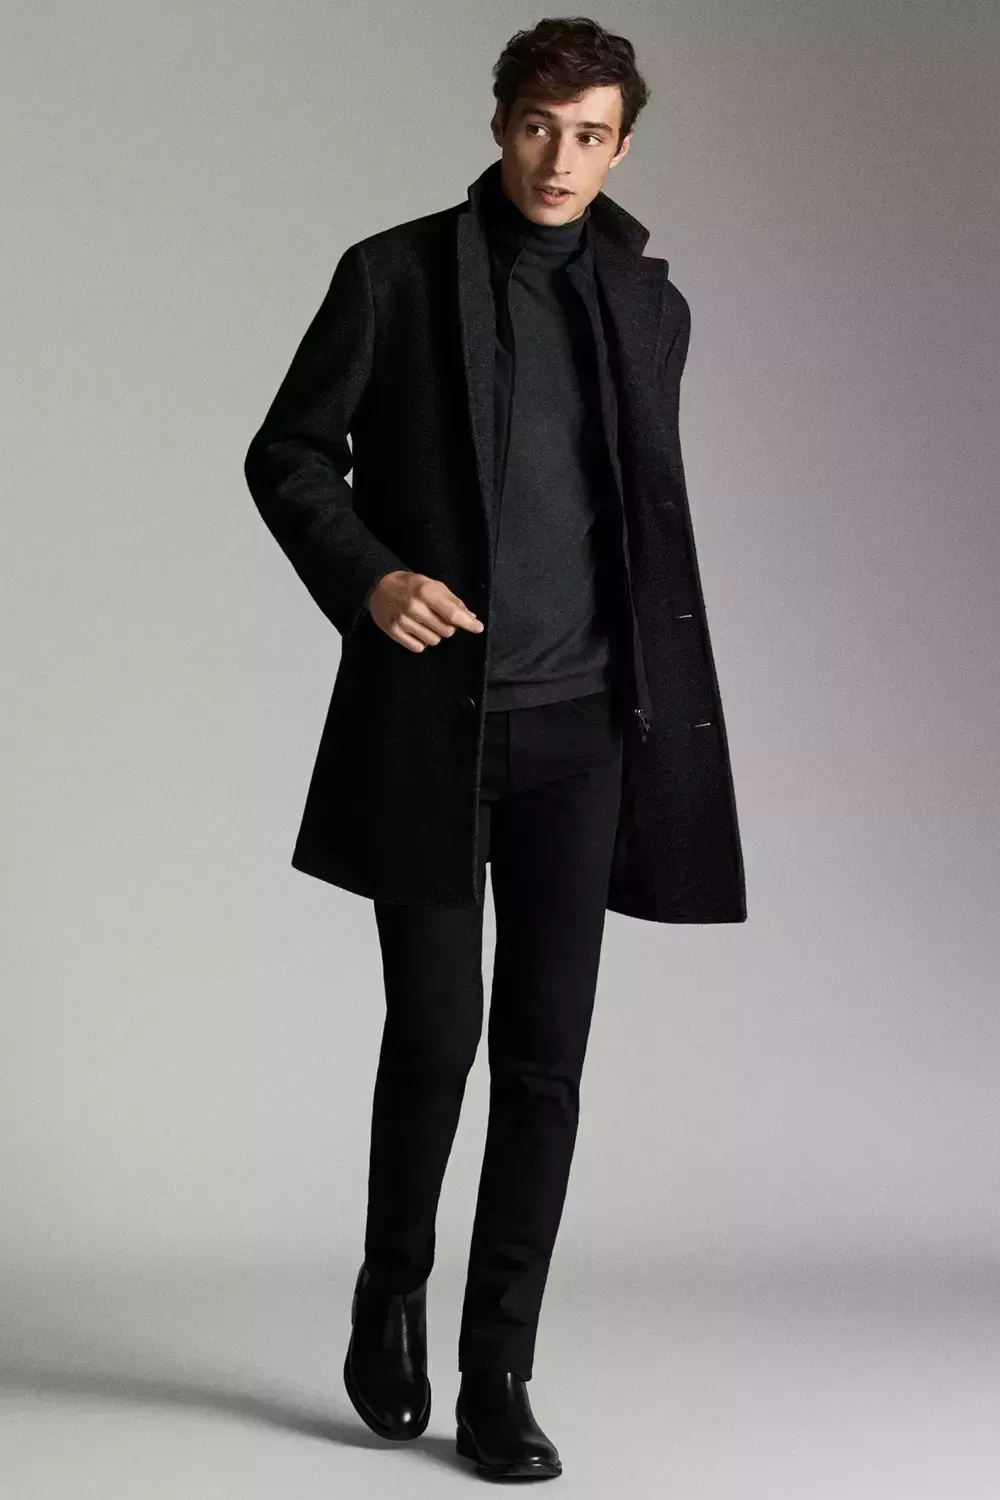 Cómo vestir de negro: 7 conjuntos atemporales y sofisticados